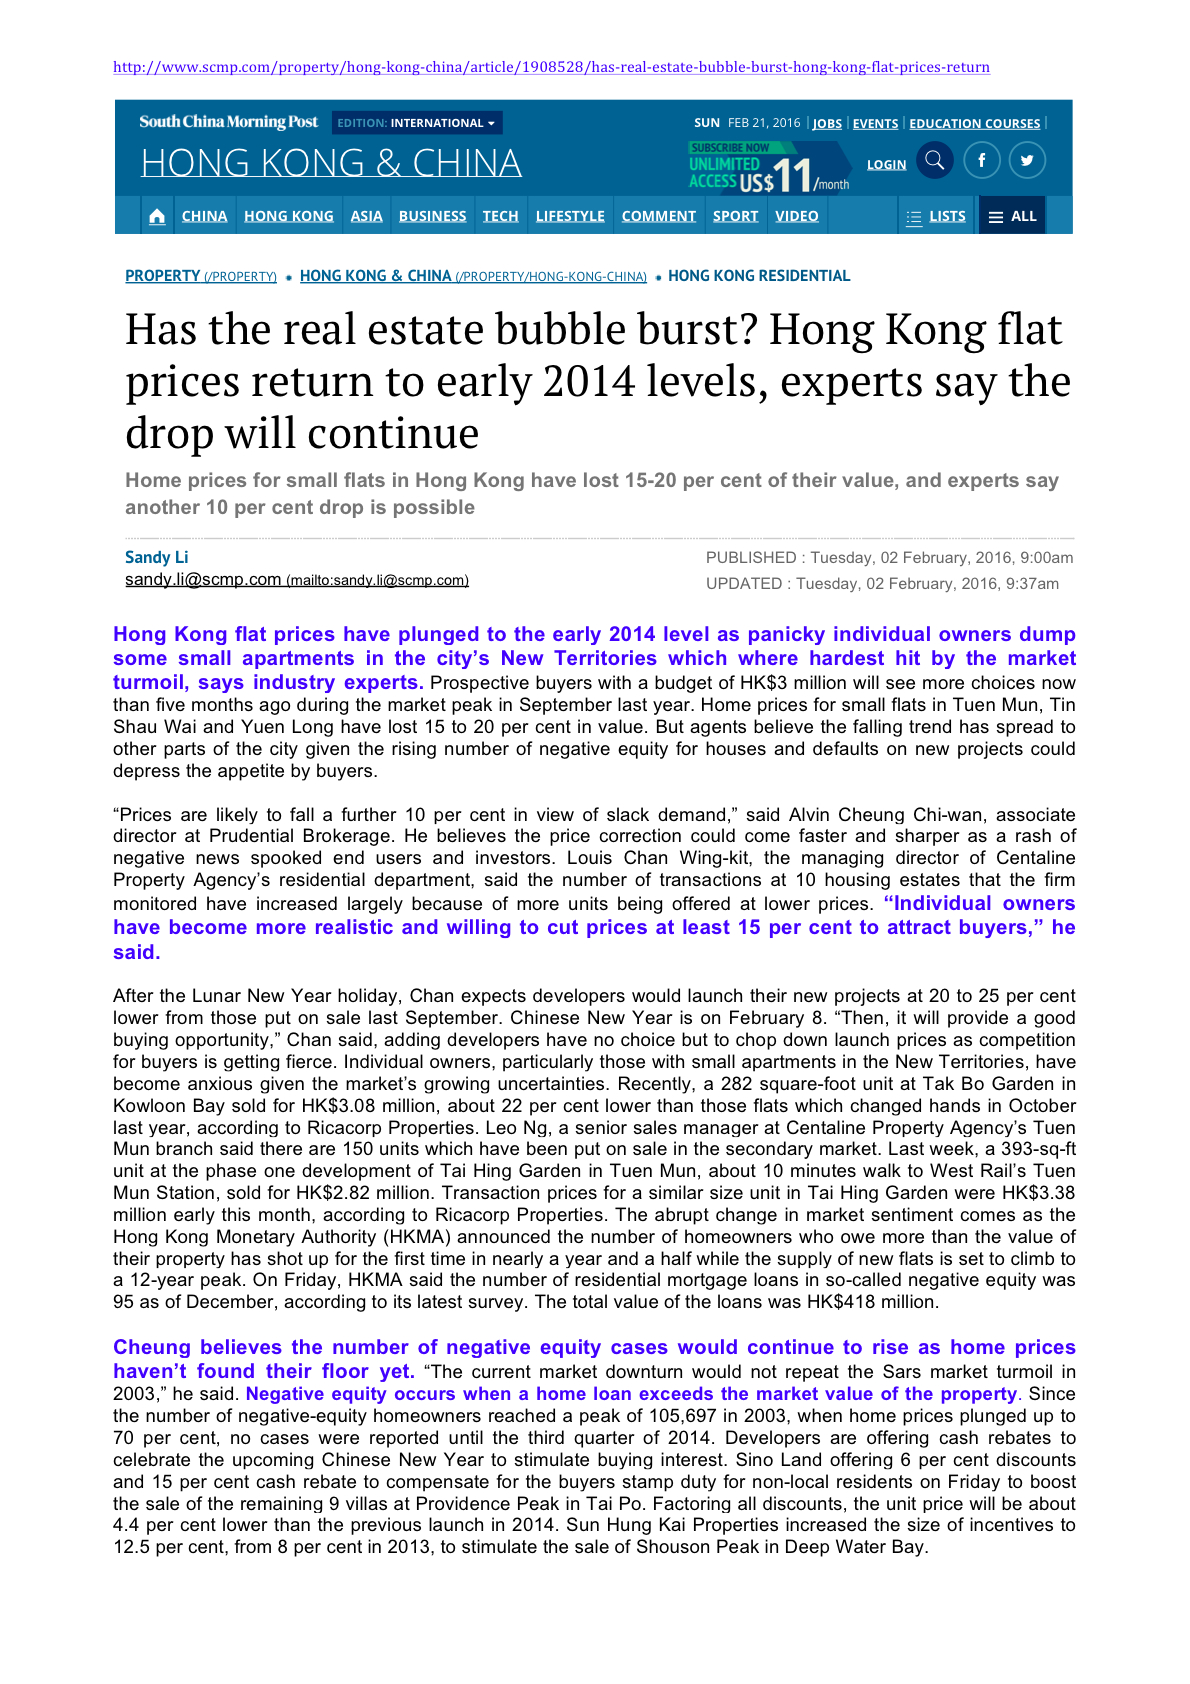 [HK] Has the Real Estate Bubble Burst?